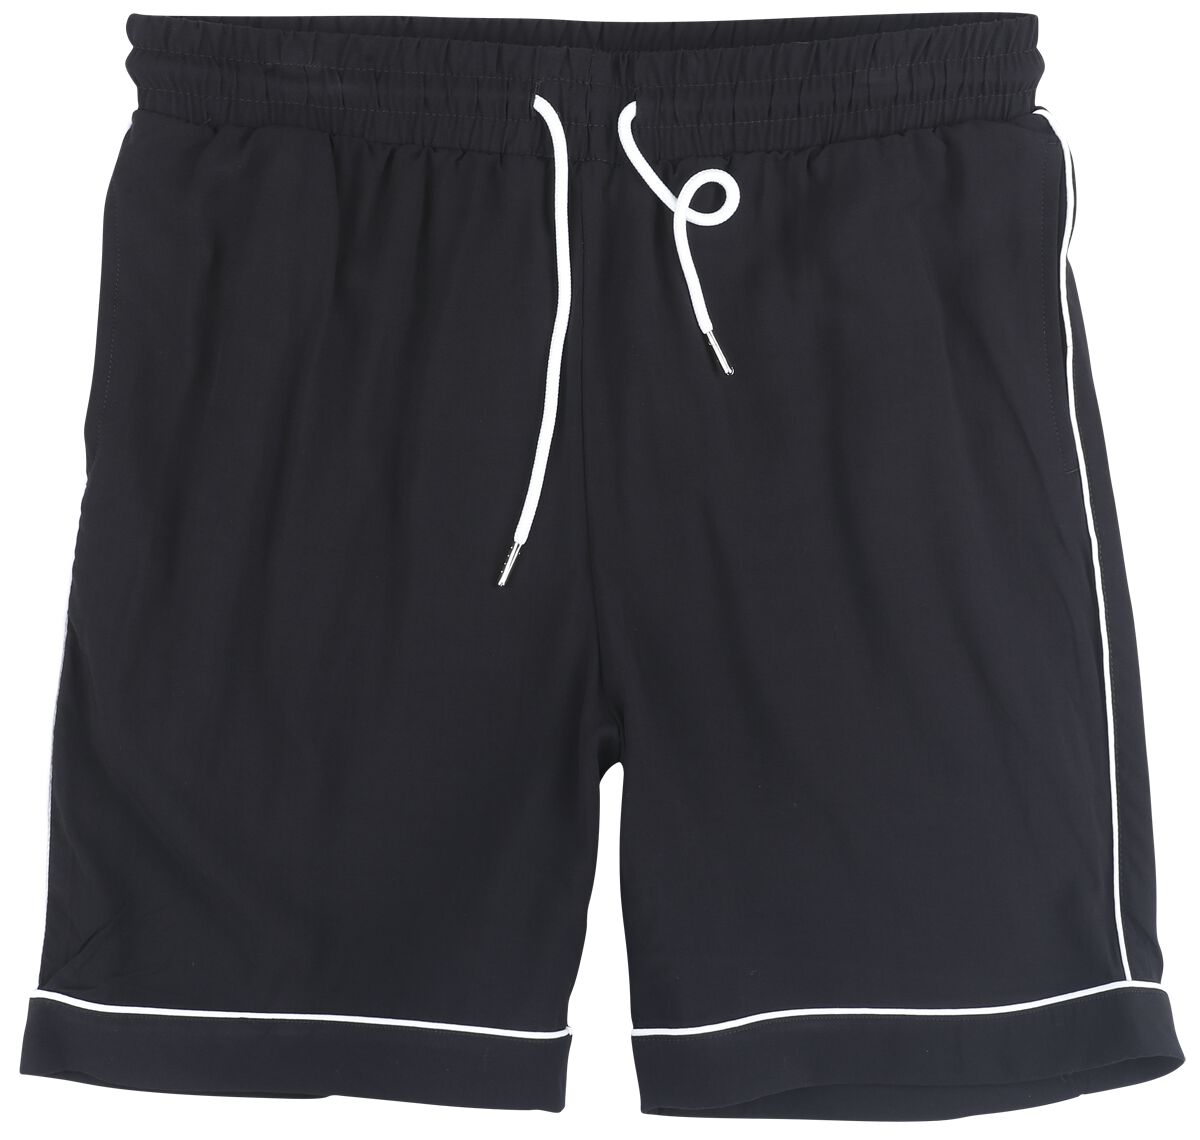 Urban Classics Short - Bowling Shorts - S bis 3XL - für Männer - Größe S - schwarz